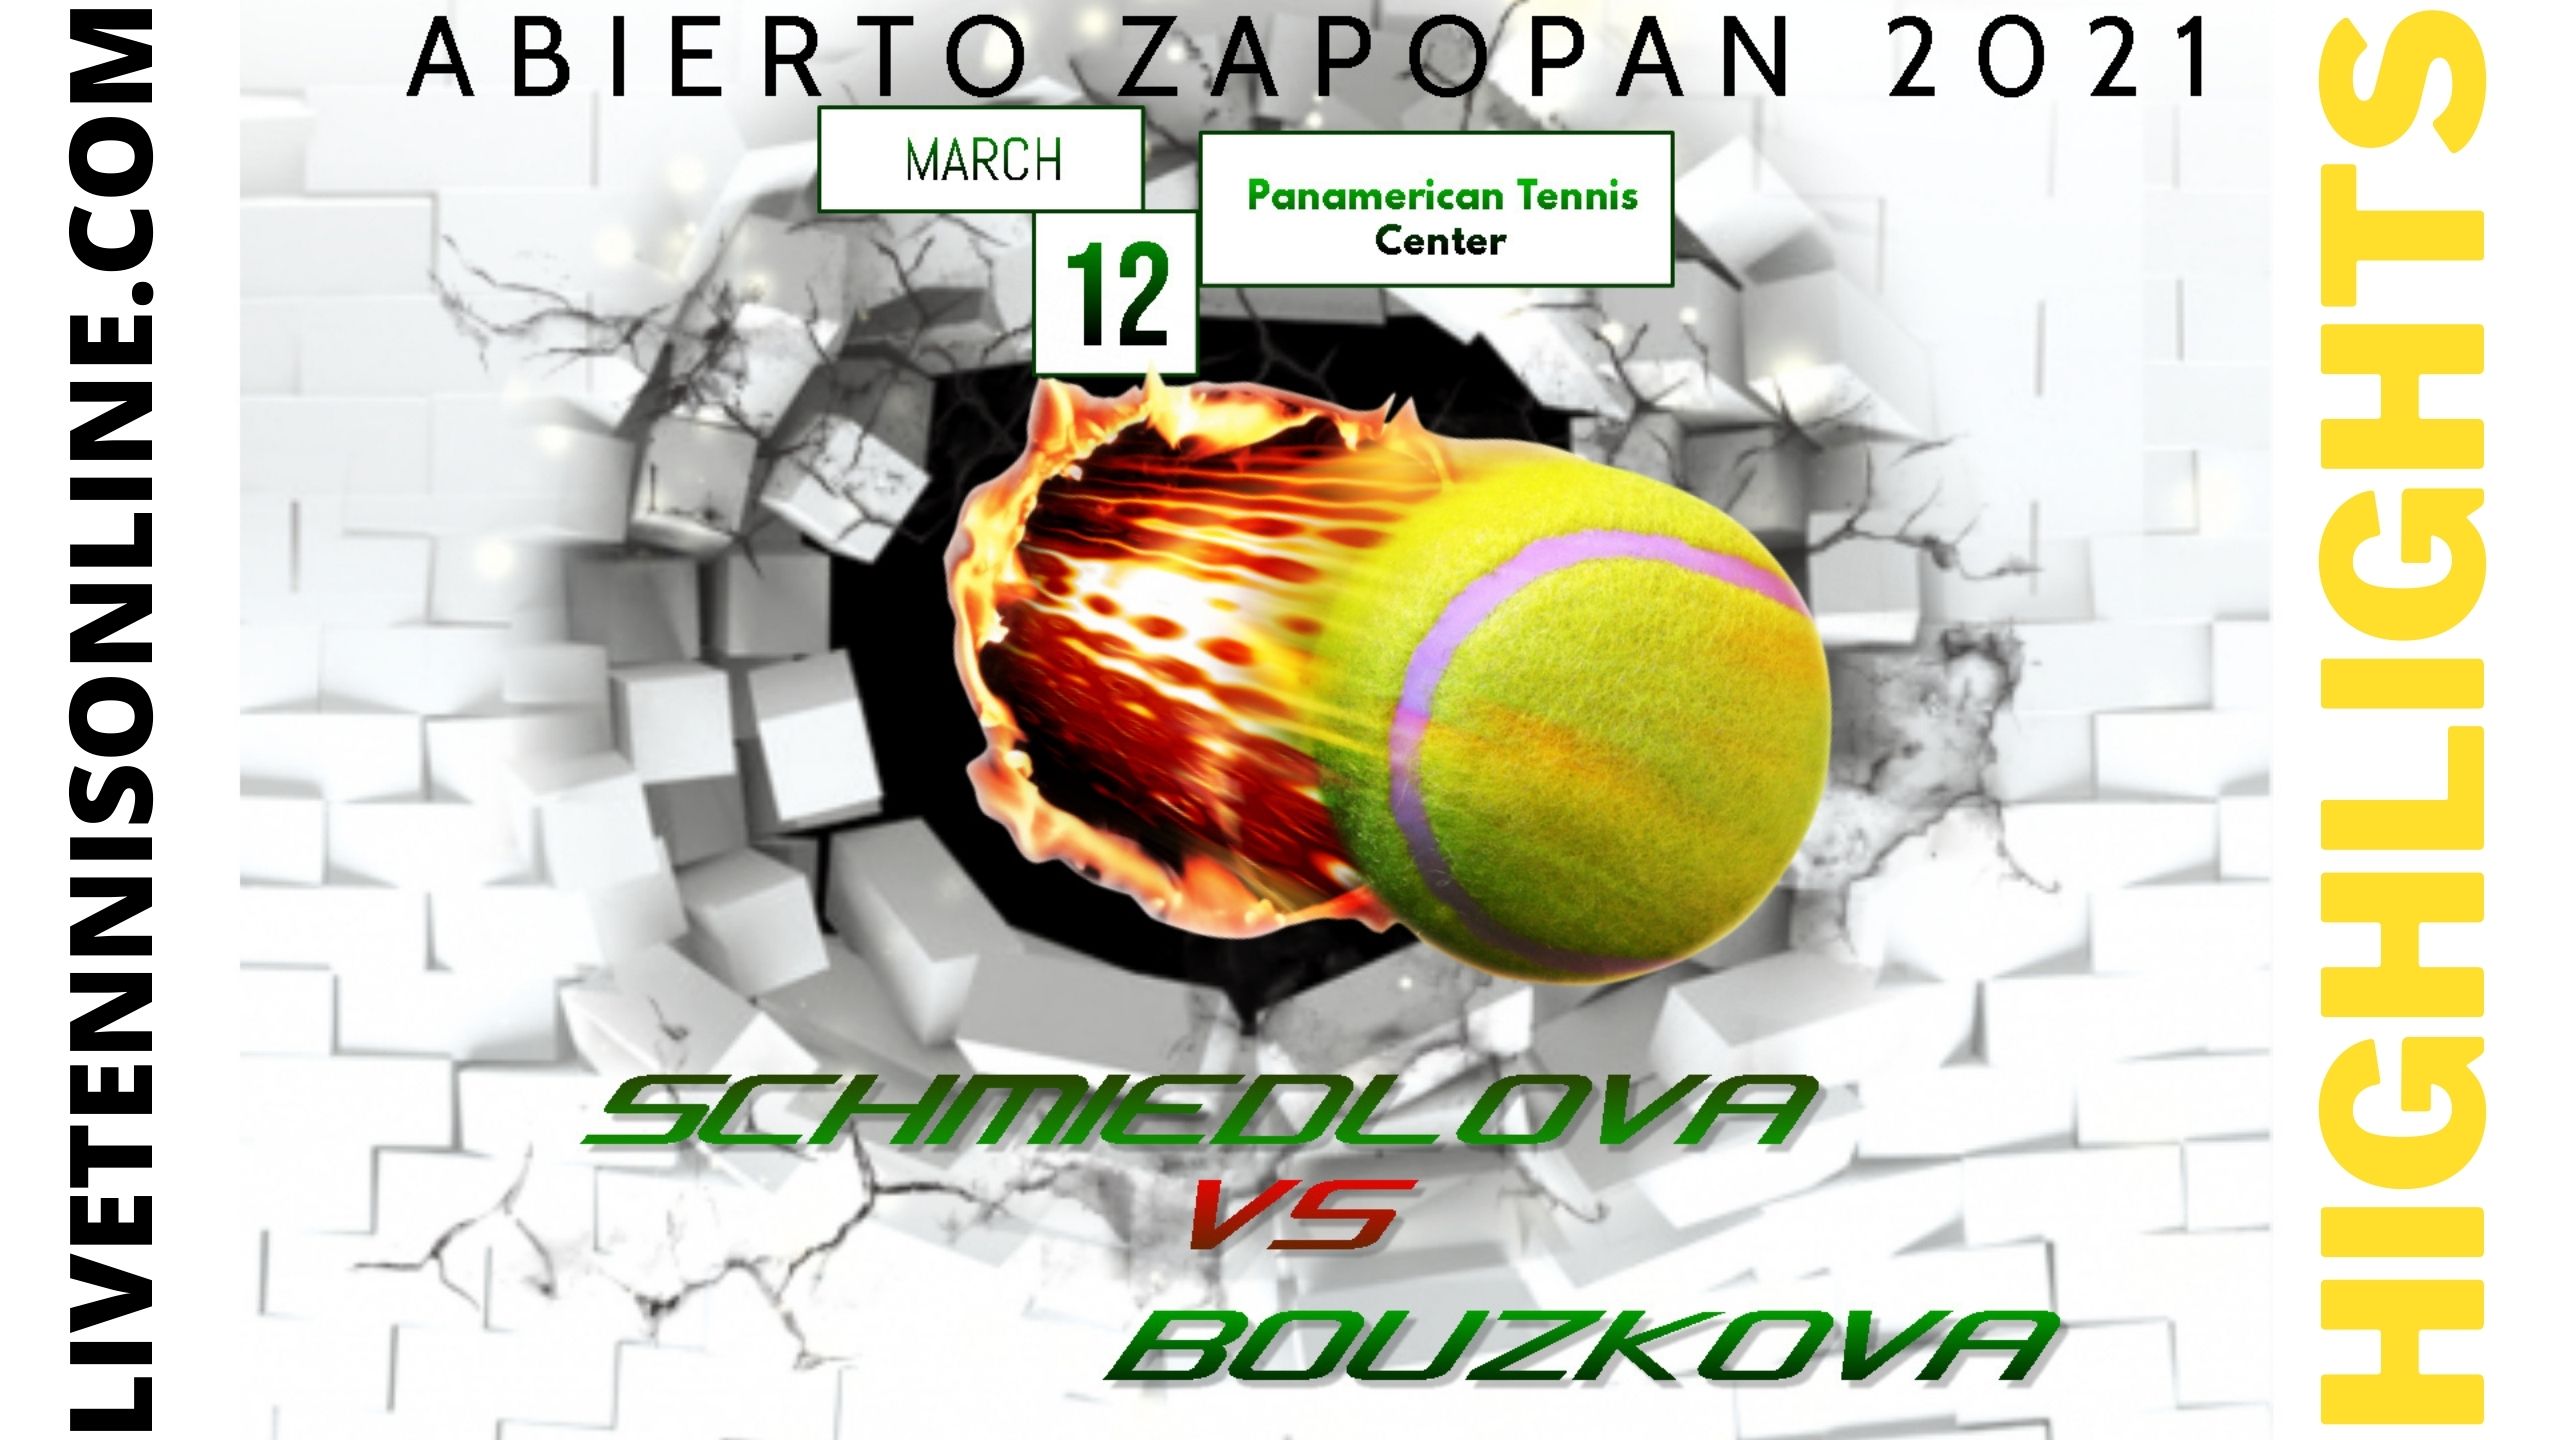 Schmiedlova Vs Bouzkova Quarter Final Highlights 2021